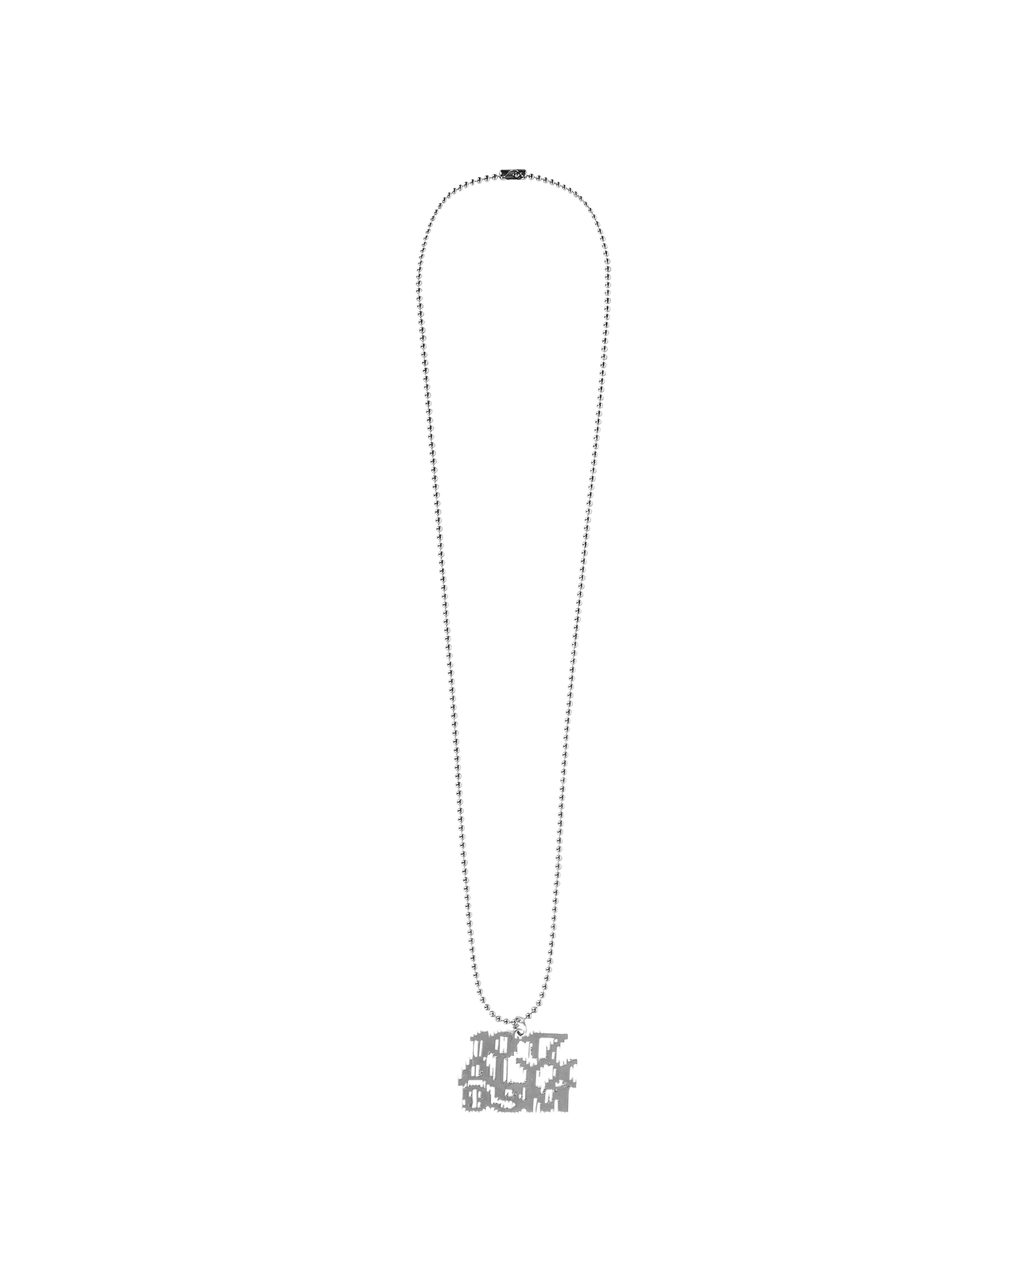 Transparent Chain Necklace - Transparent – Feature